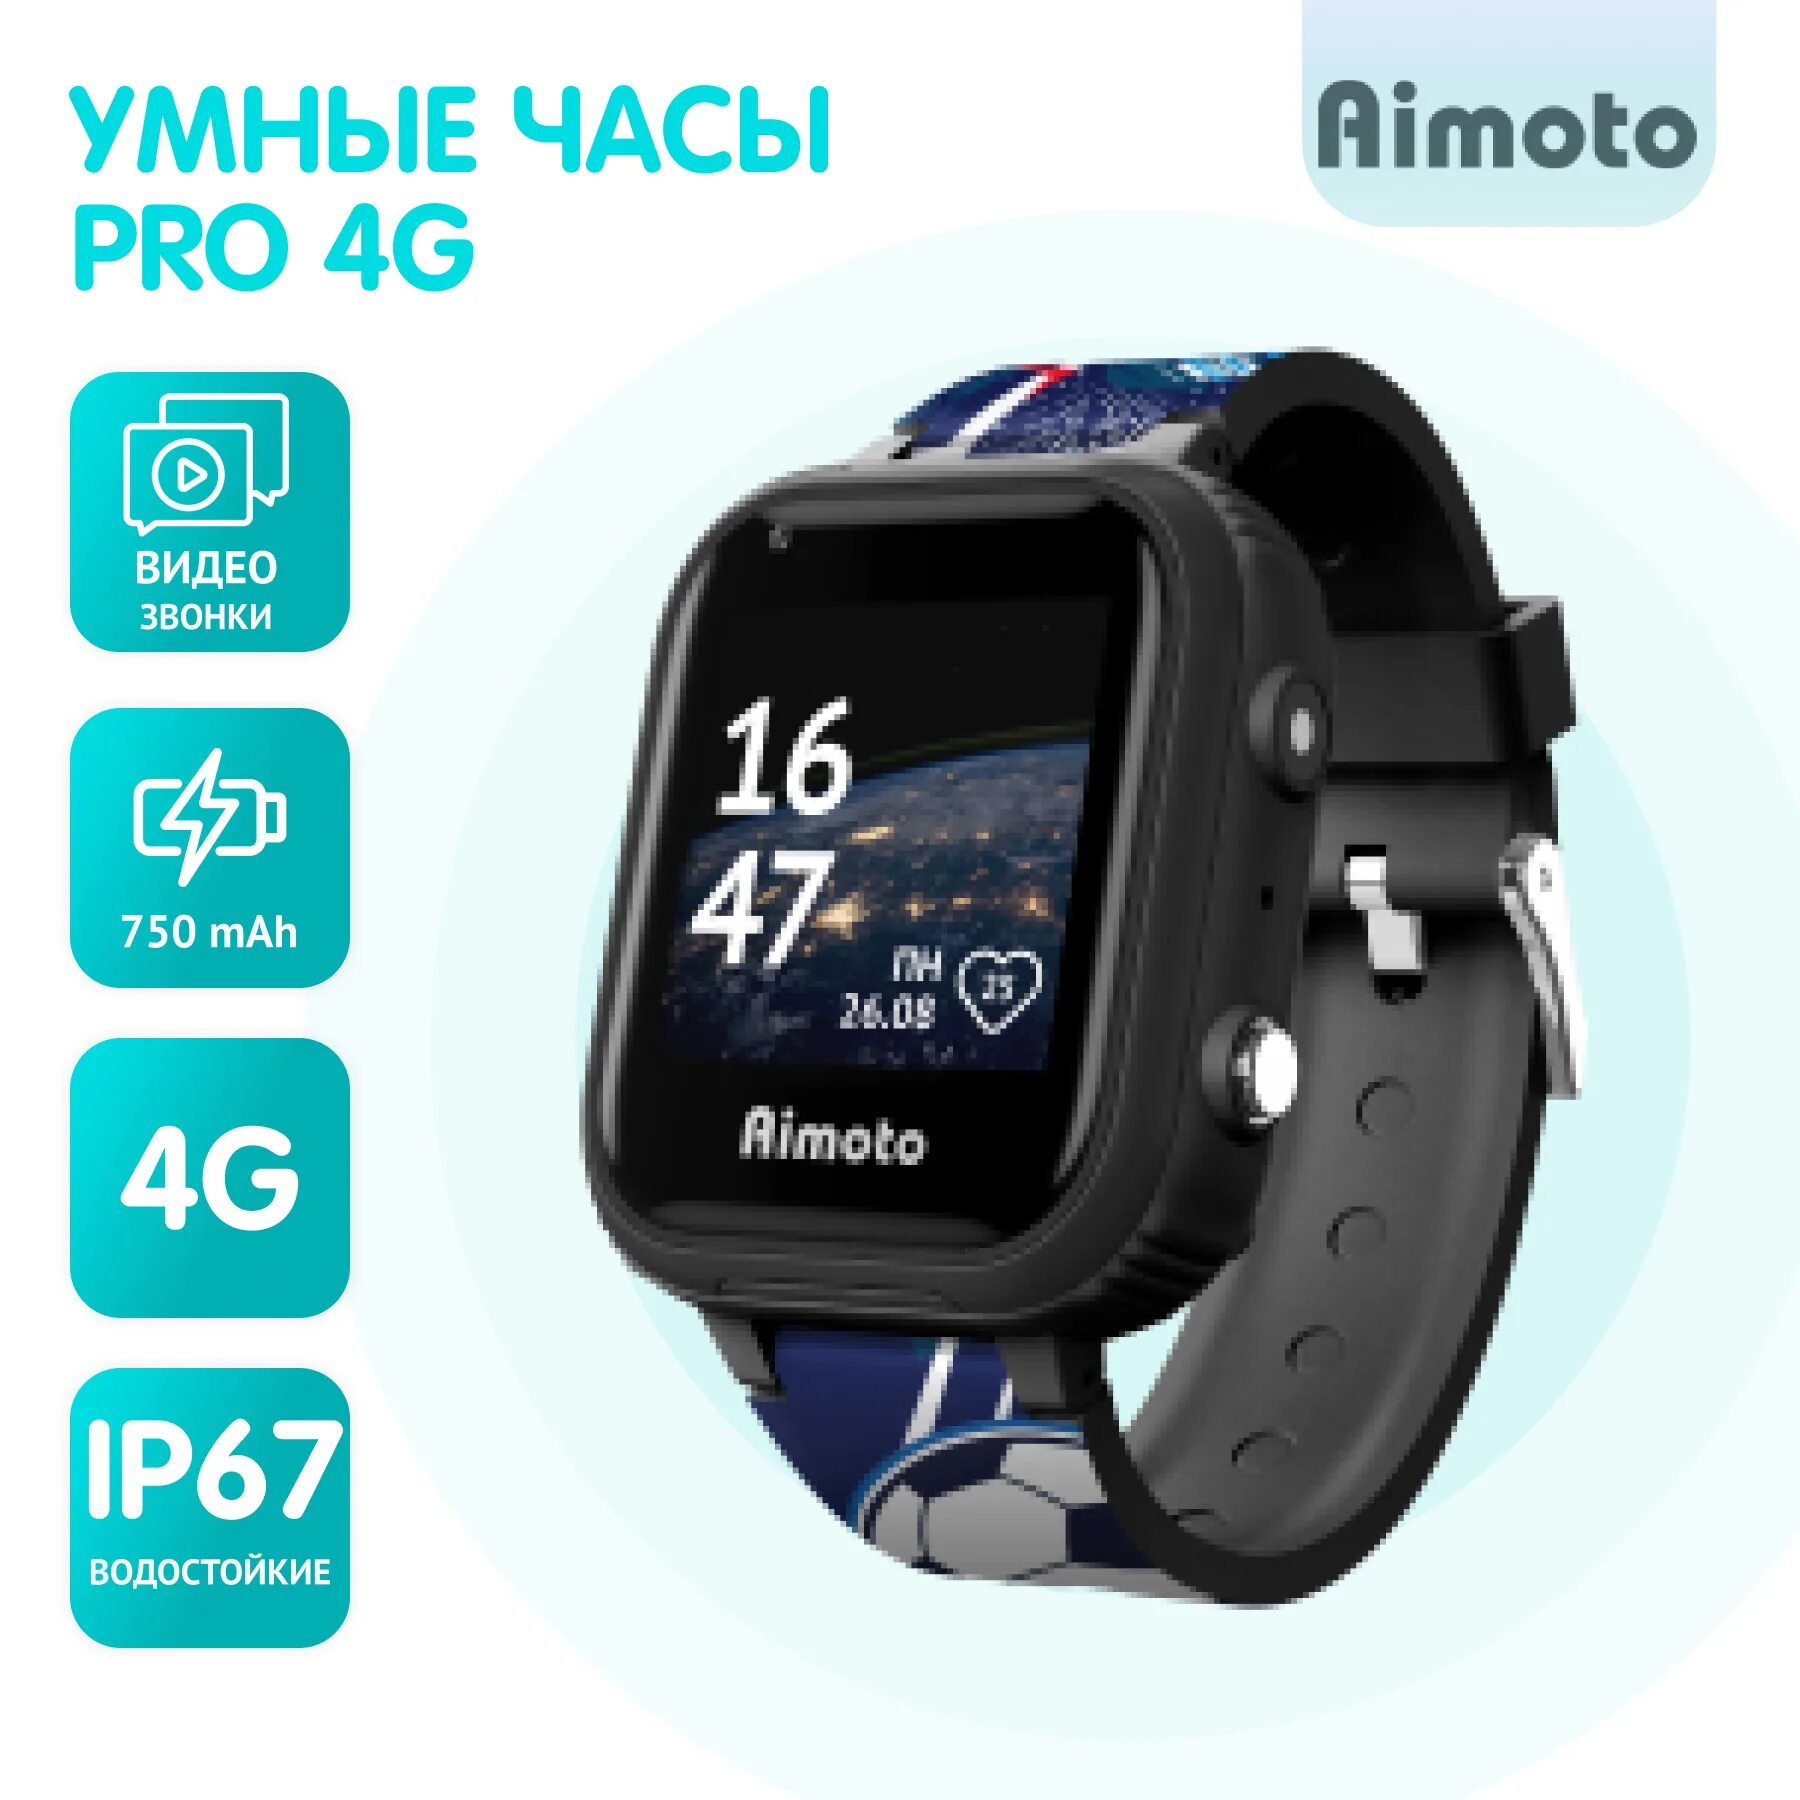 Часы Aimoto Pro Indigo 4g. Часы Aimoto Ocean 4g. Aimoto Pro 4g черный. Aimoto Pro Indigo 4g черные. Pro indigo 4g